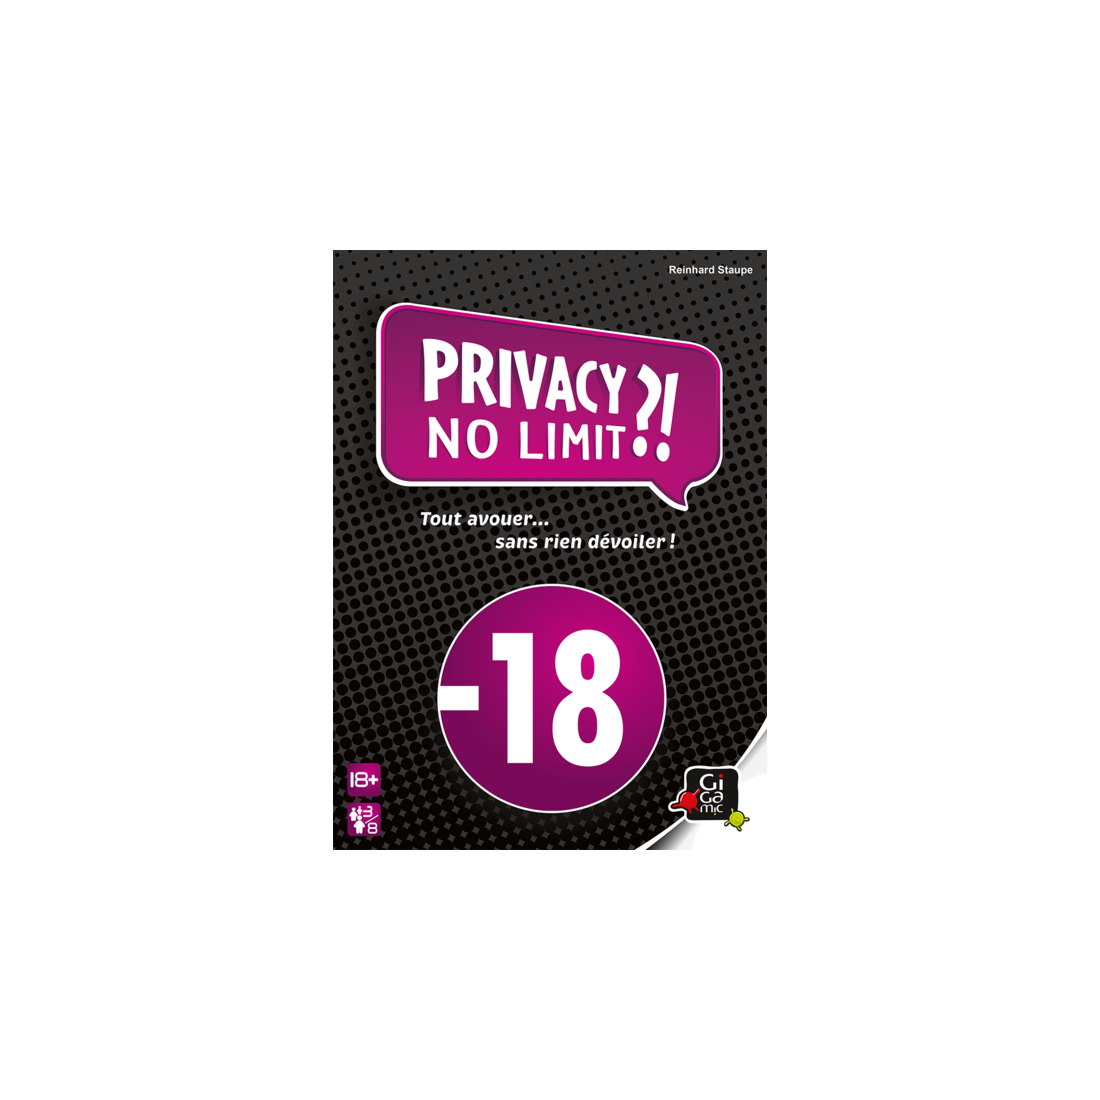 Privacy no limit - Jeu de société pour adultes - Gigamic